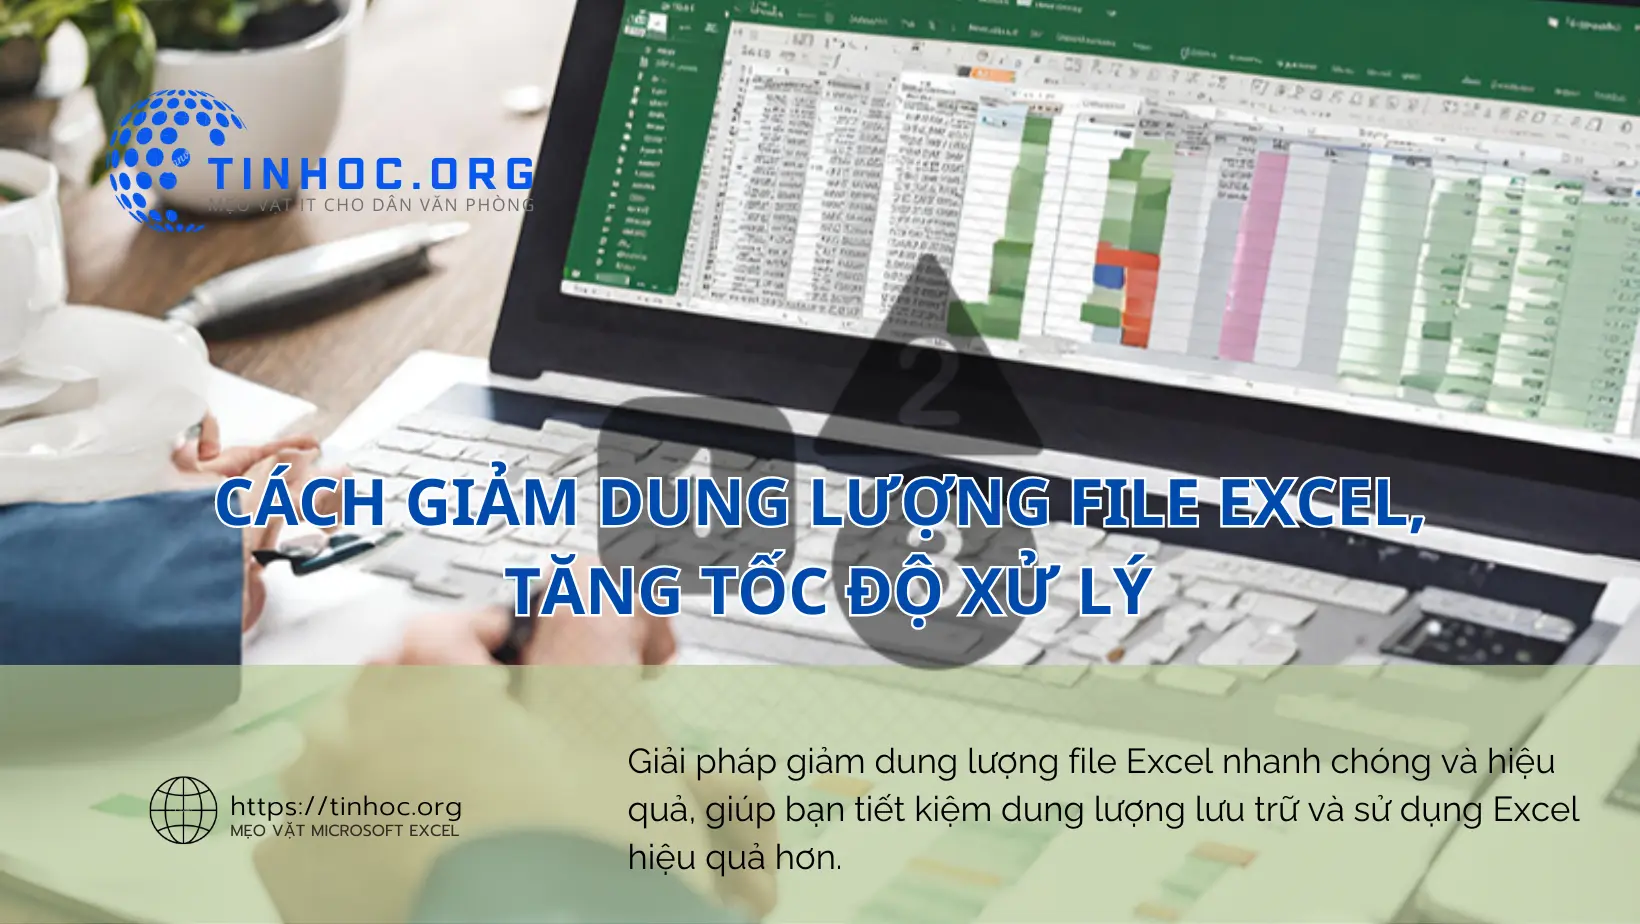 Giải pháp giảm dung lượng file Excel nhanh chóng và hiệu quả, giúp bạn tiết kiệm dung lượng lưu trữ và sử dụng Excel hiệu quả hơn.